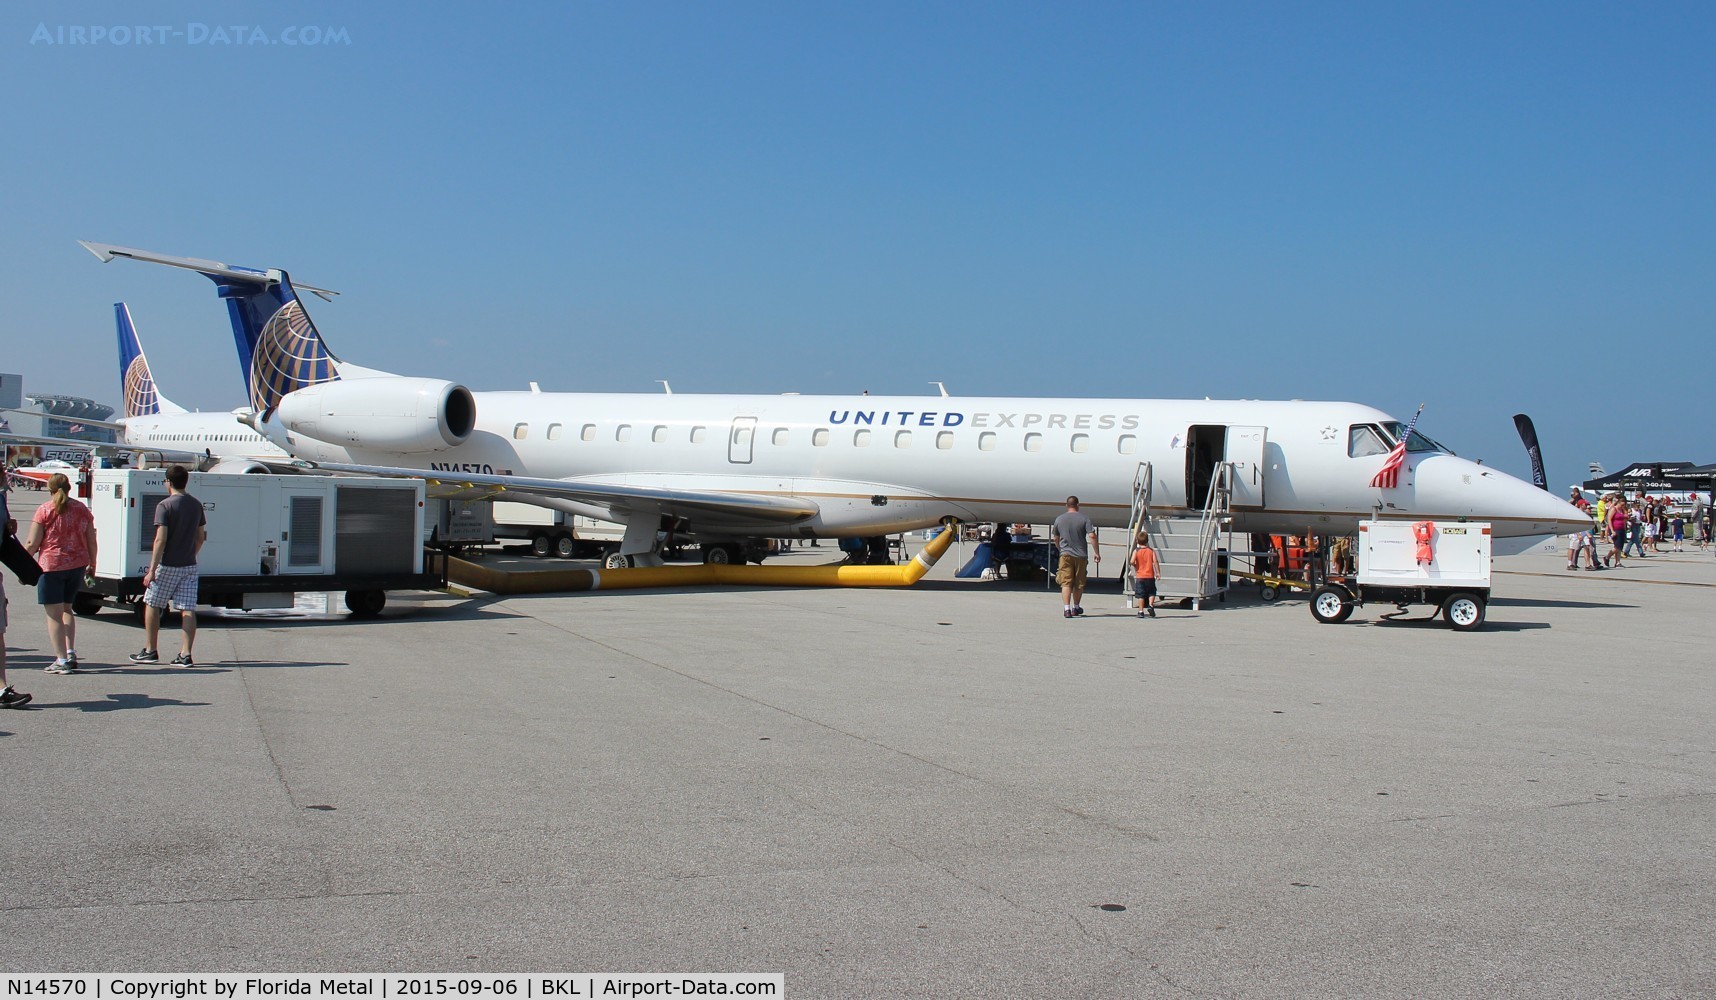 N14570, 2002 Embraer ERJ-145LR (EMB-145LR) C/N 145632, United Express